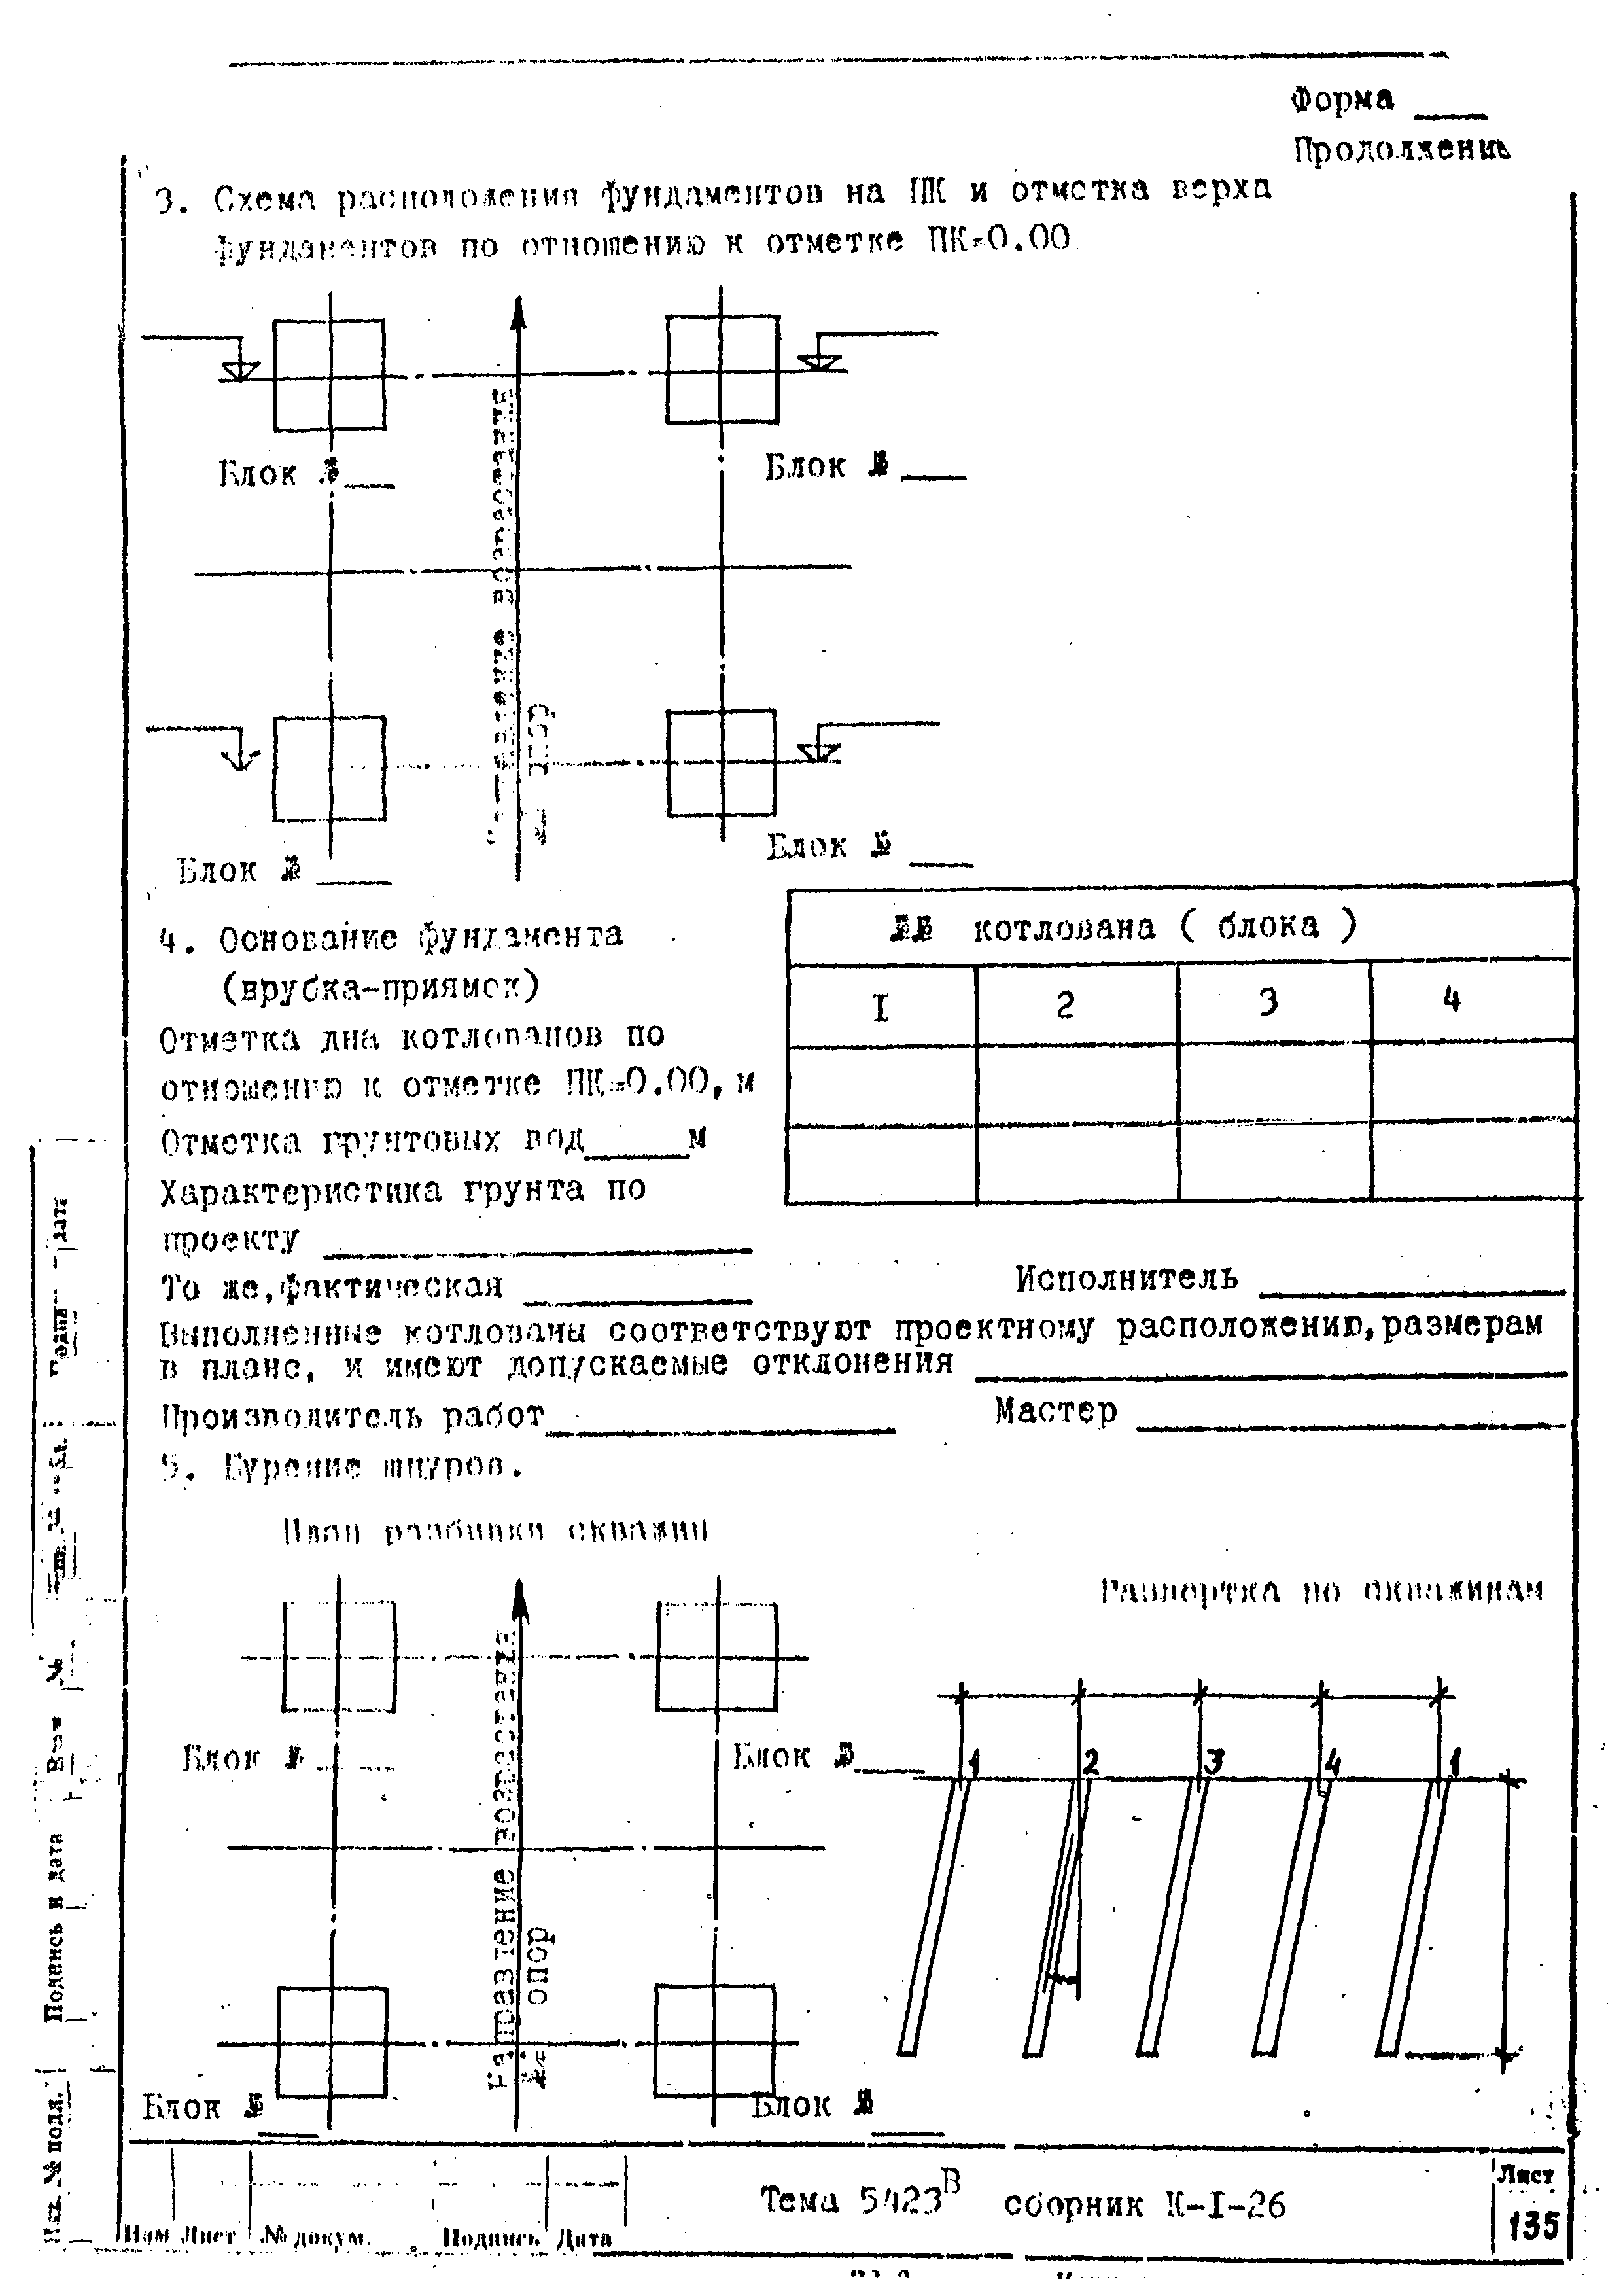 Технологическая карта К-1-26-6